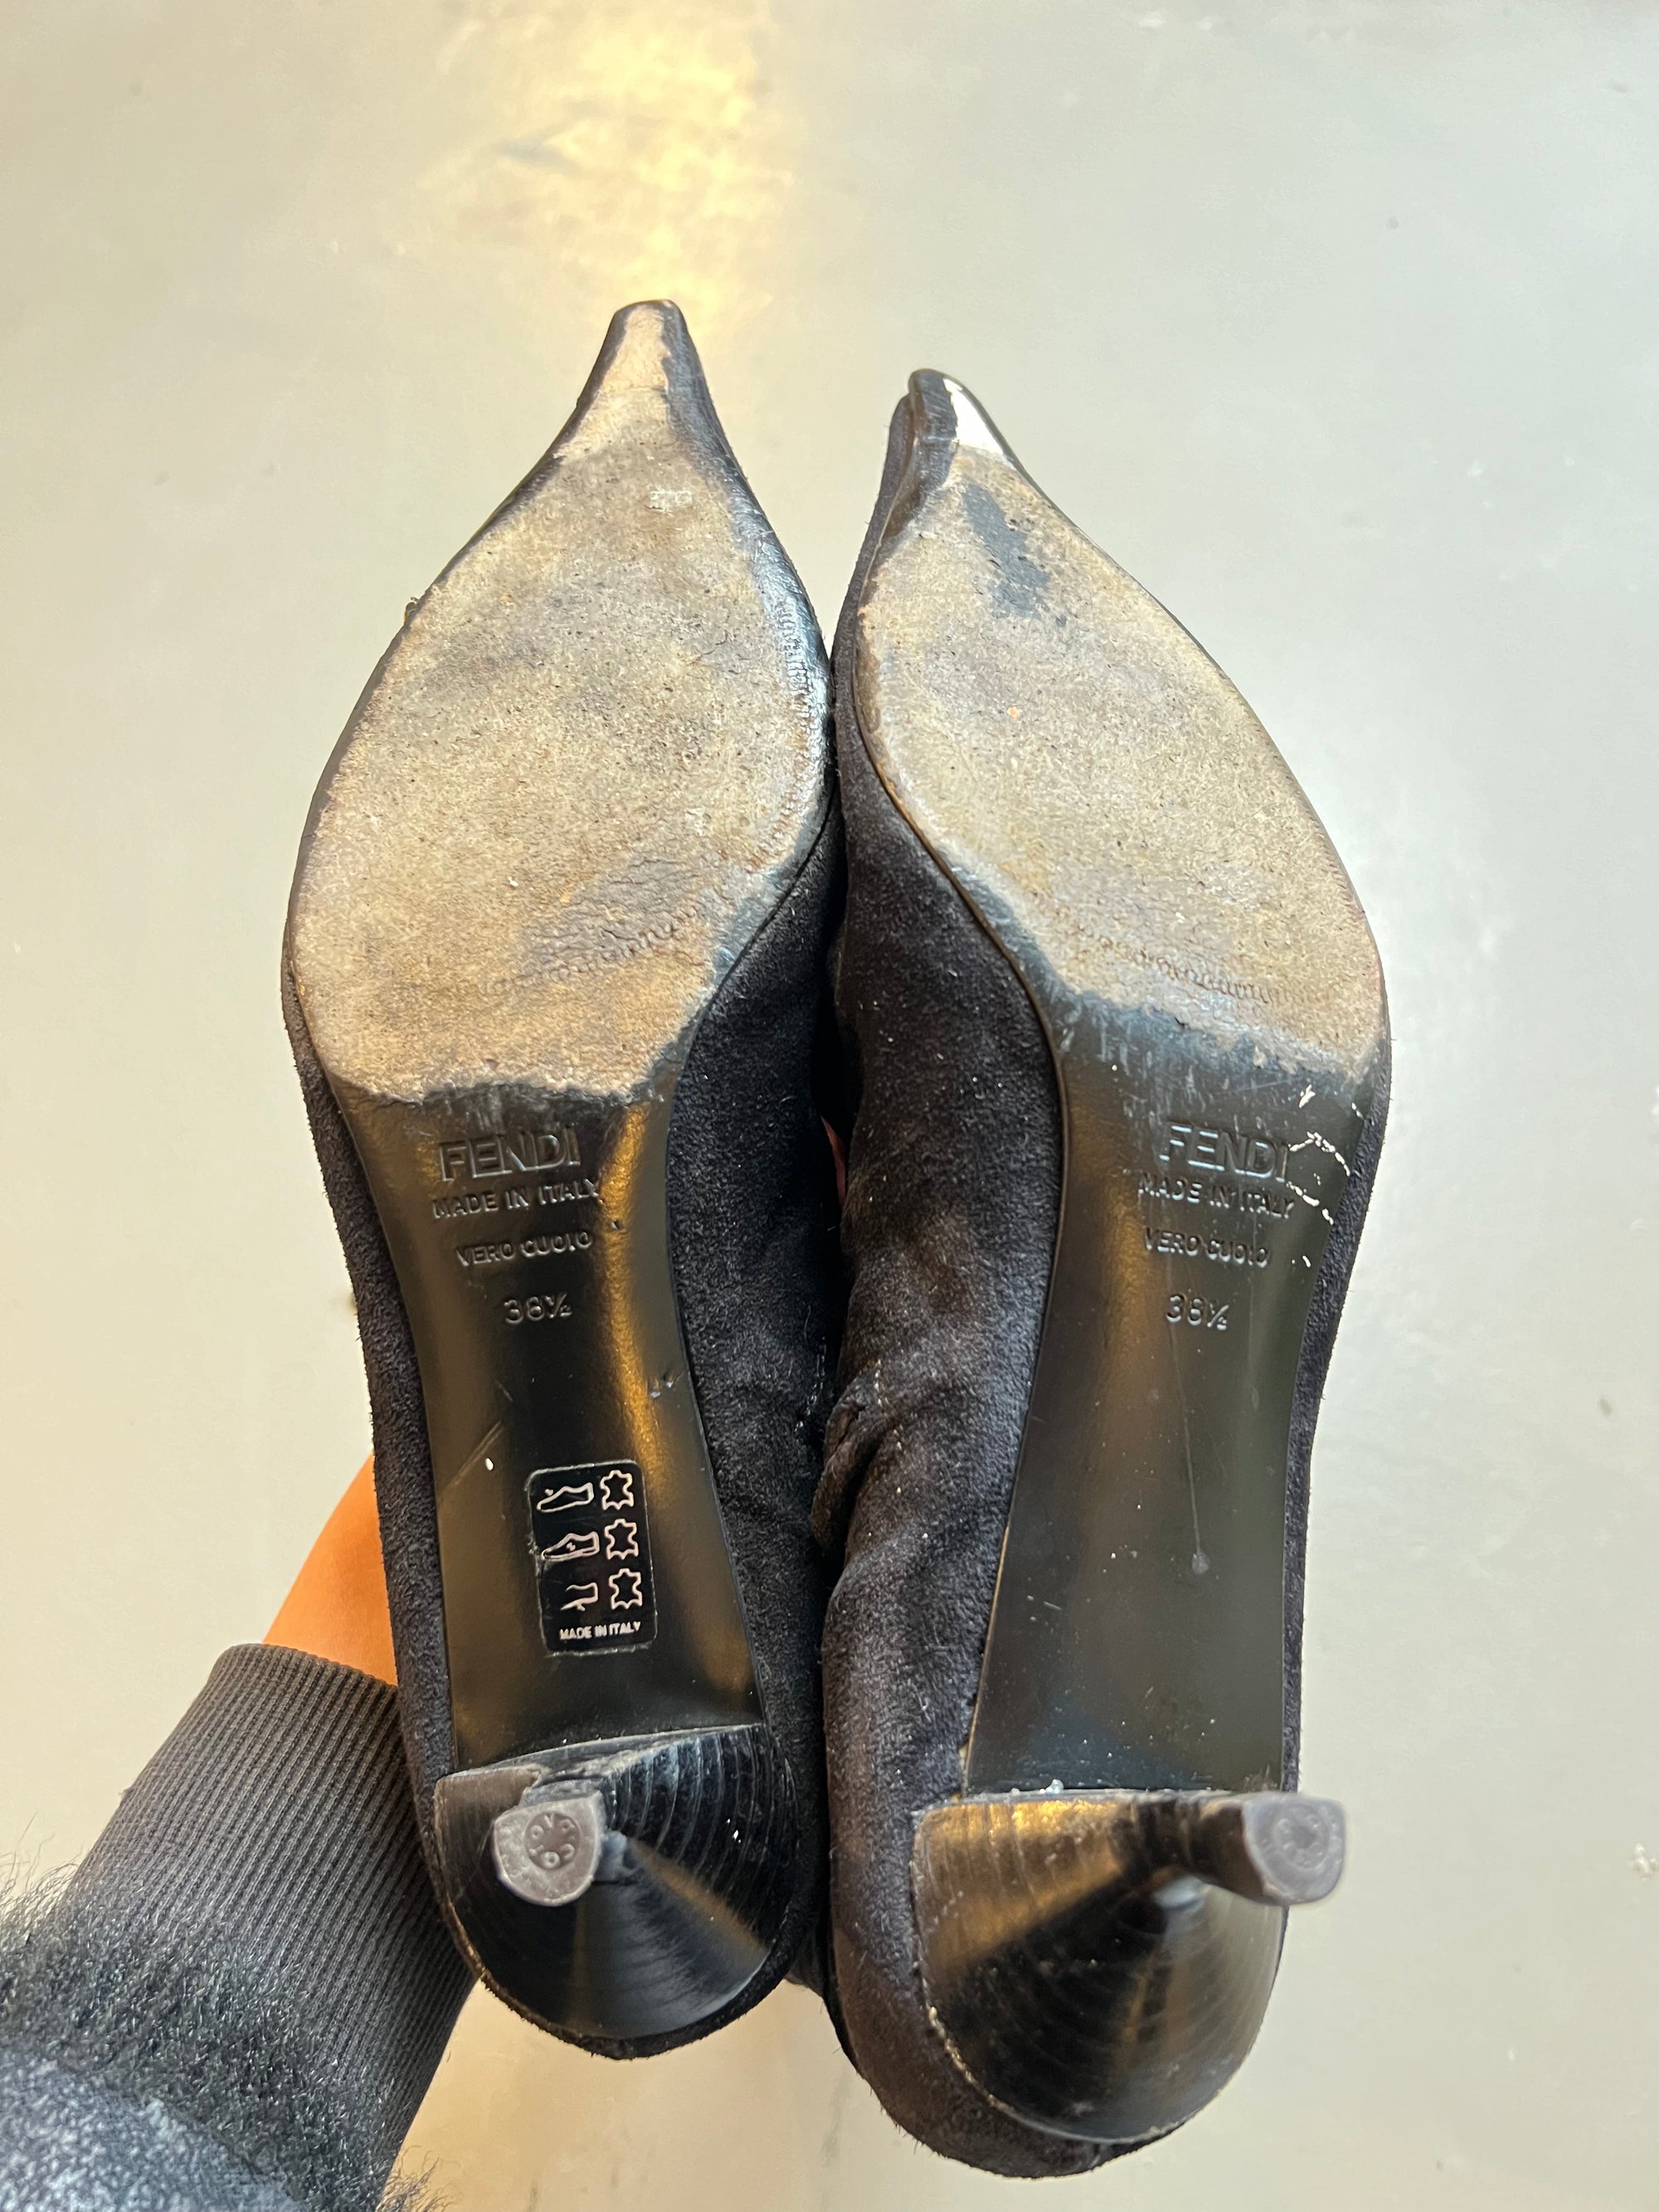 Zu sehen sind die Sohlen von kniehohe schwarze Stiefel mit dünnen Absätzen von Fendi in Größe 38,5  vor einem grauen Hintergrund.